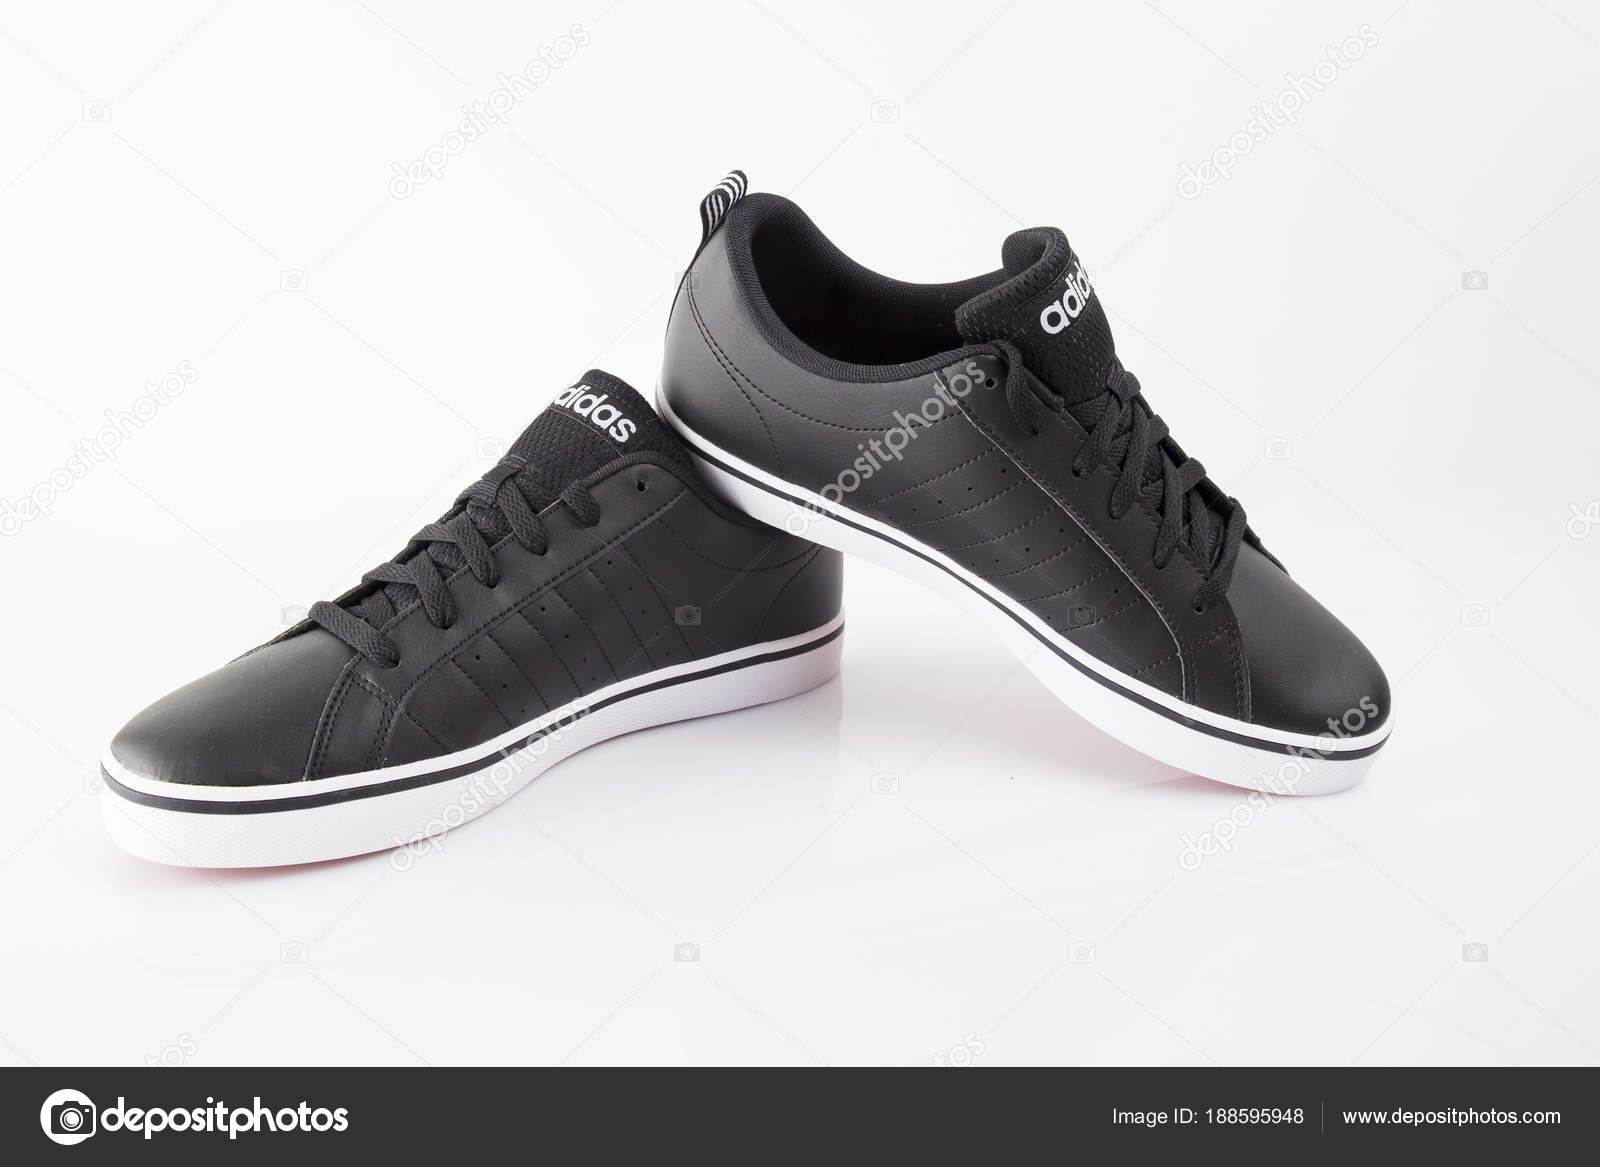 Adidas zapatos de imágenes de Adidas sin royalties Depositphotos